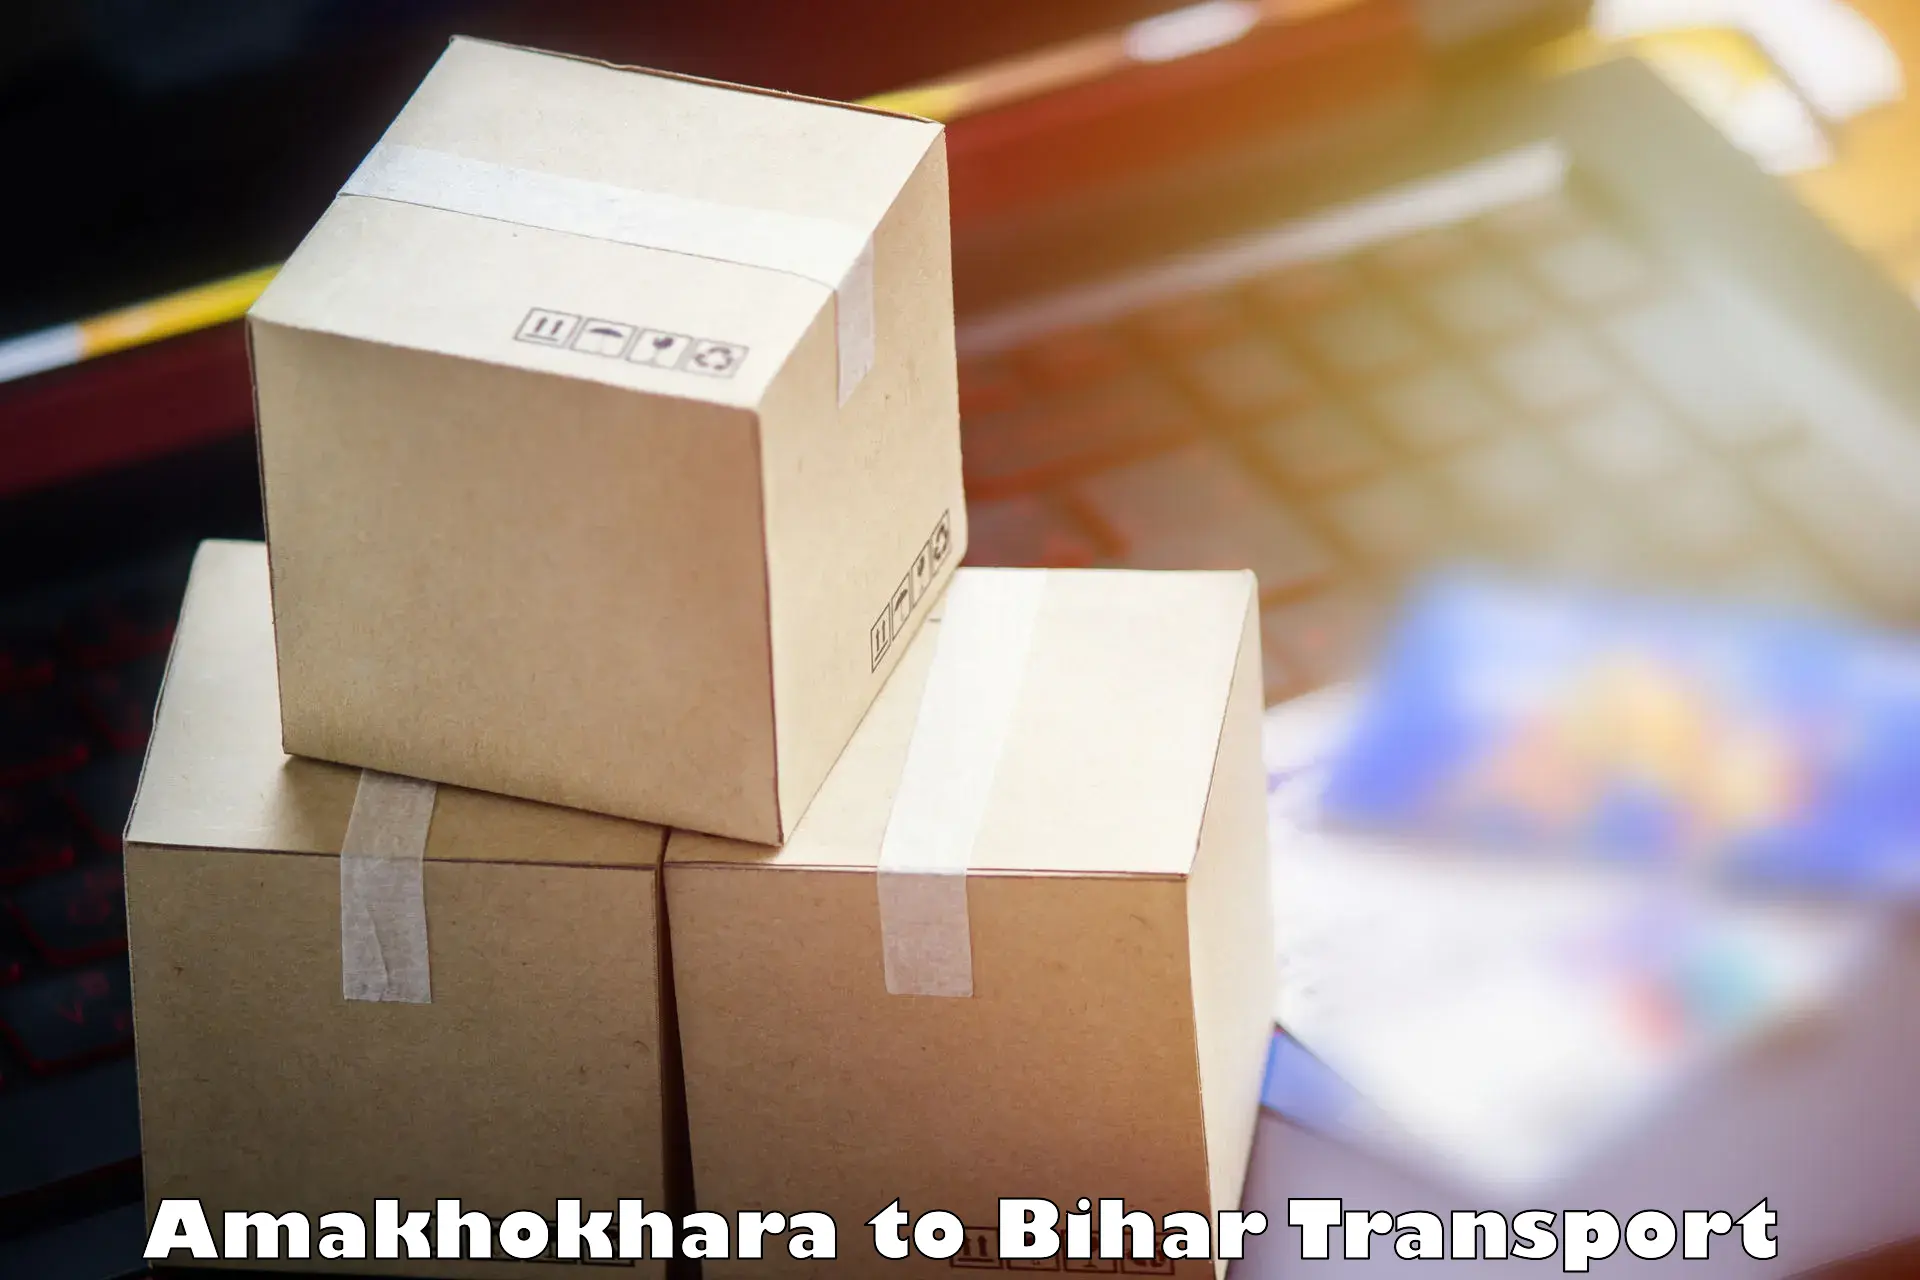 Online transport service Amakhokhara to Chakai